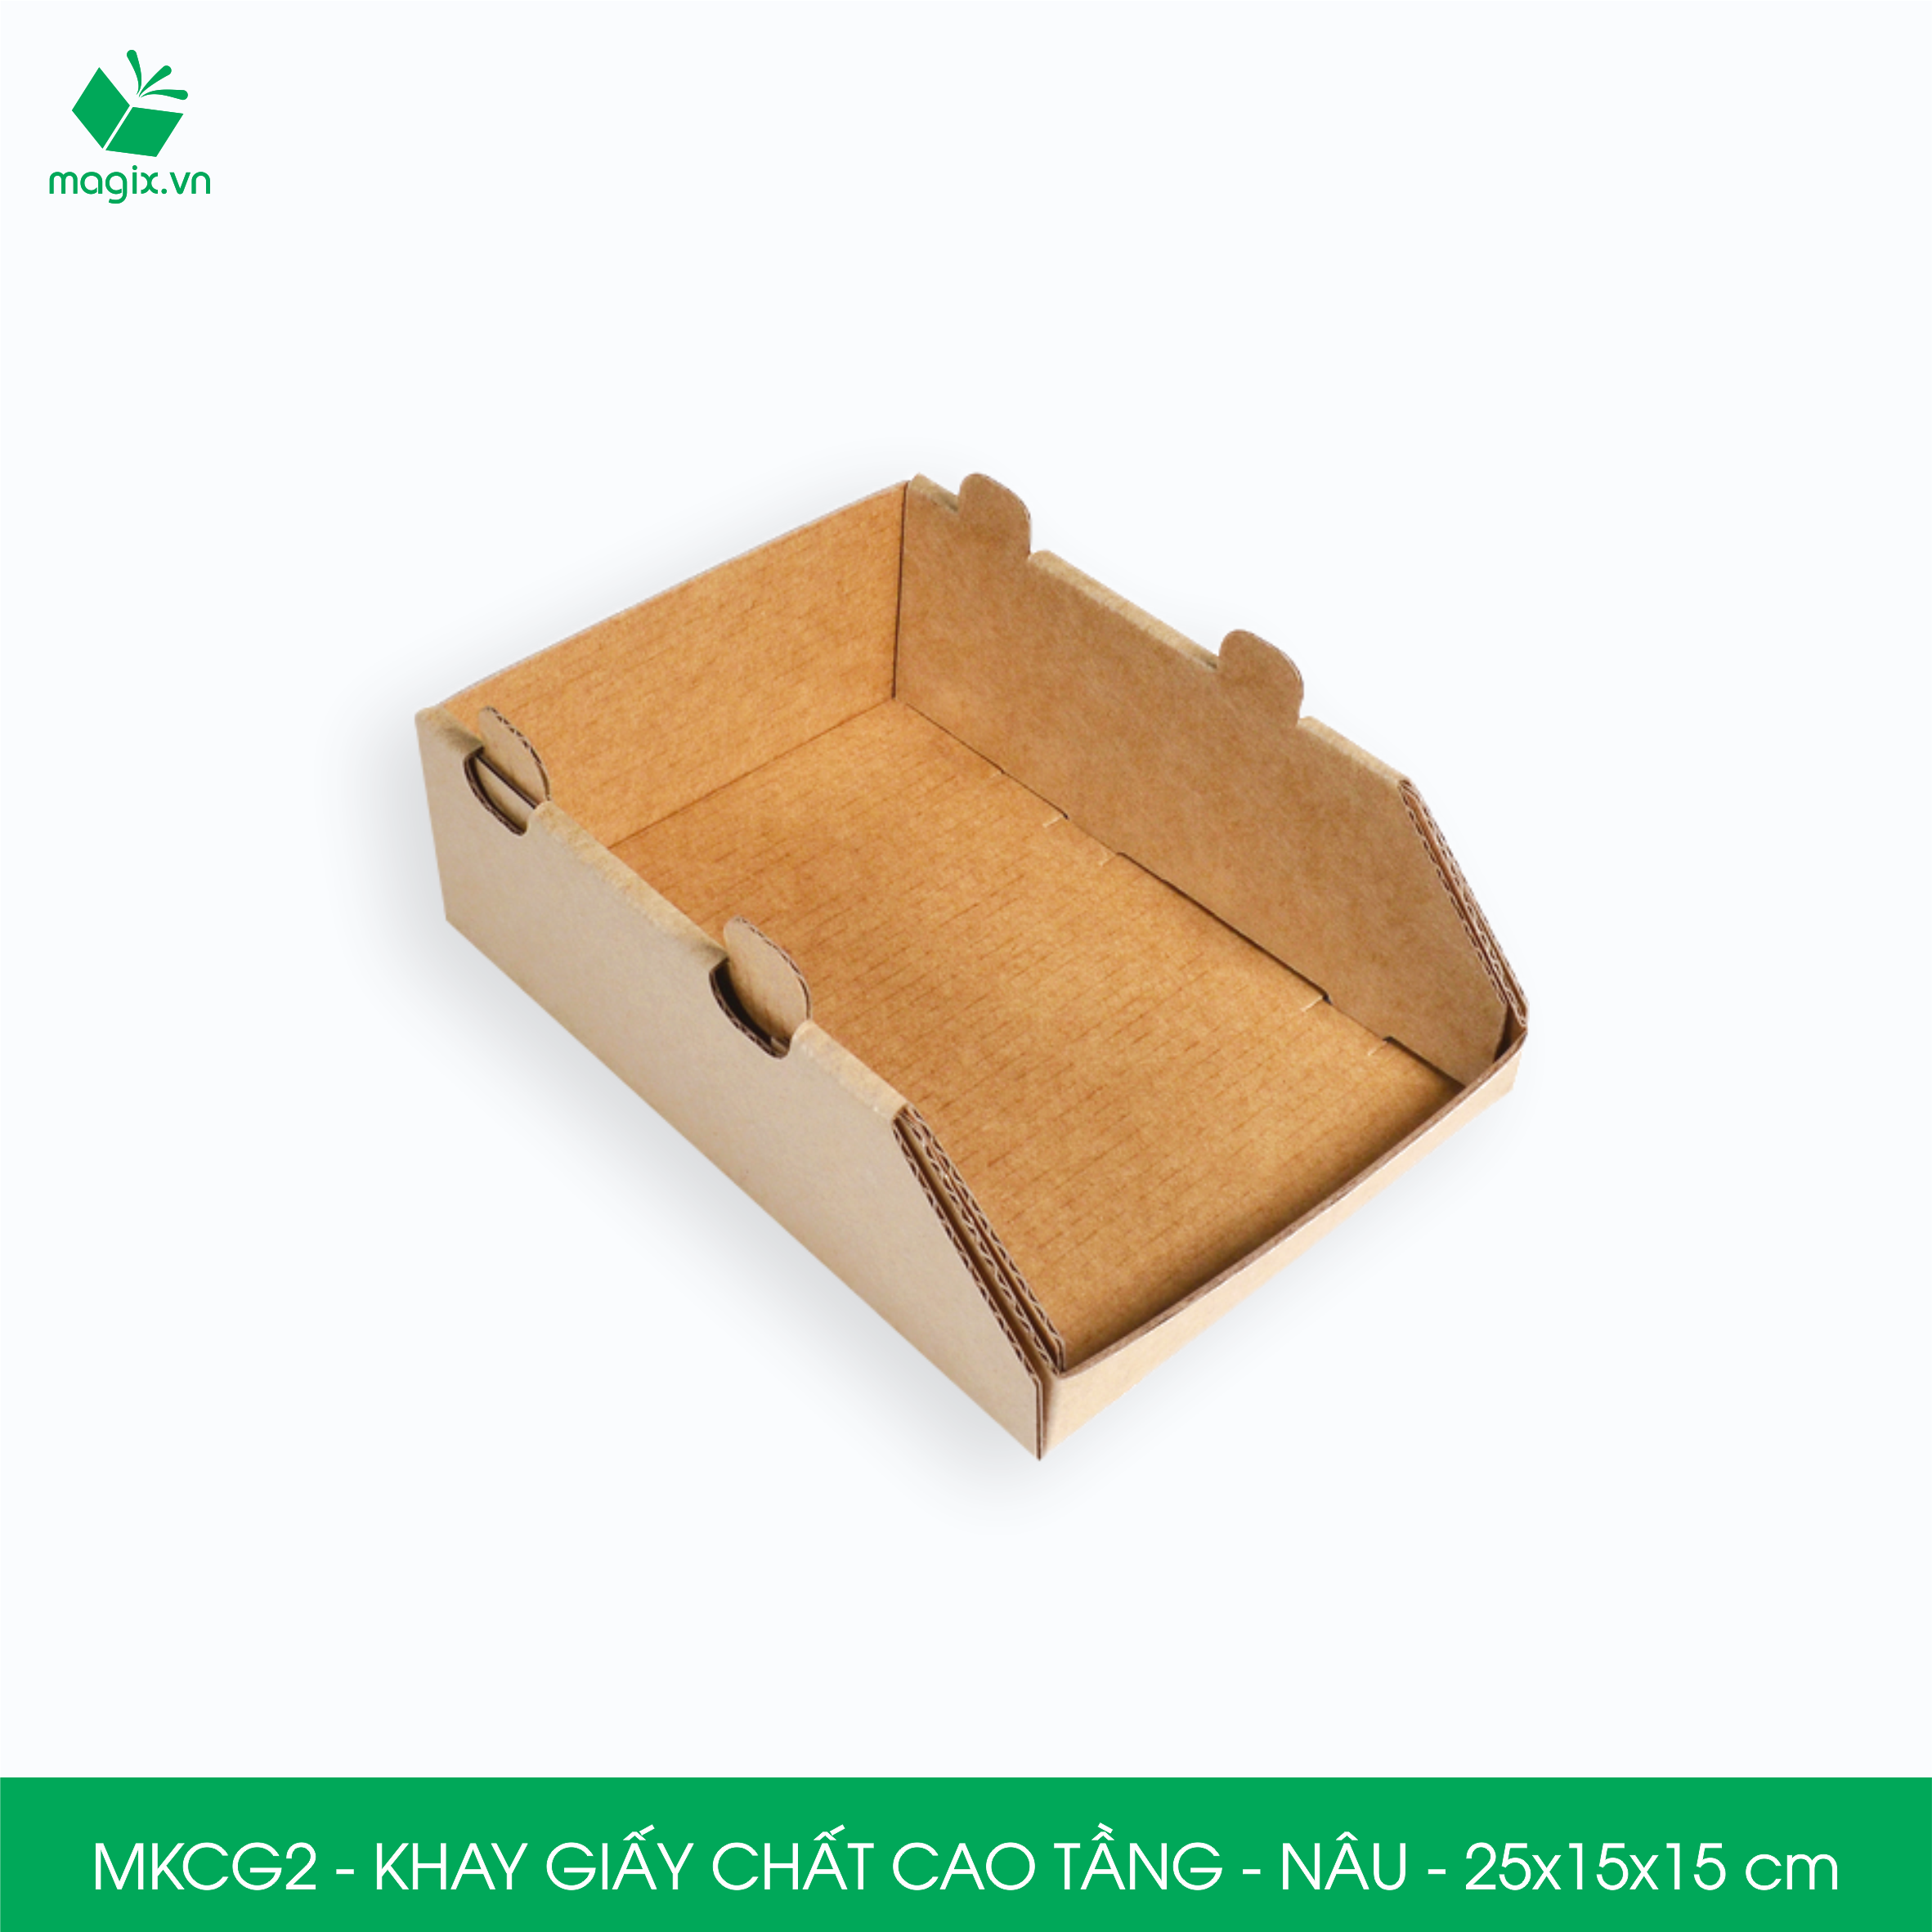 MKCG2 - 25x15x15 cm - 20 Khay giấy chất cao tầng bằng giấy carton siêu cứng, kệ giấy đựng đồ văn phòng, khay đựng dụng cụ, khay linh kiện, kệ phân loại dụng cụ